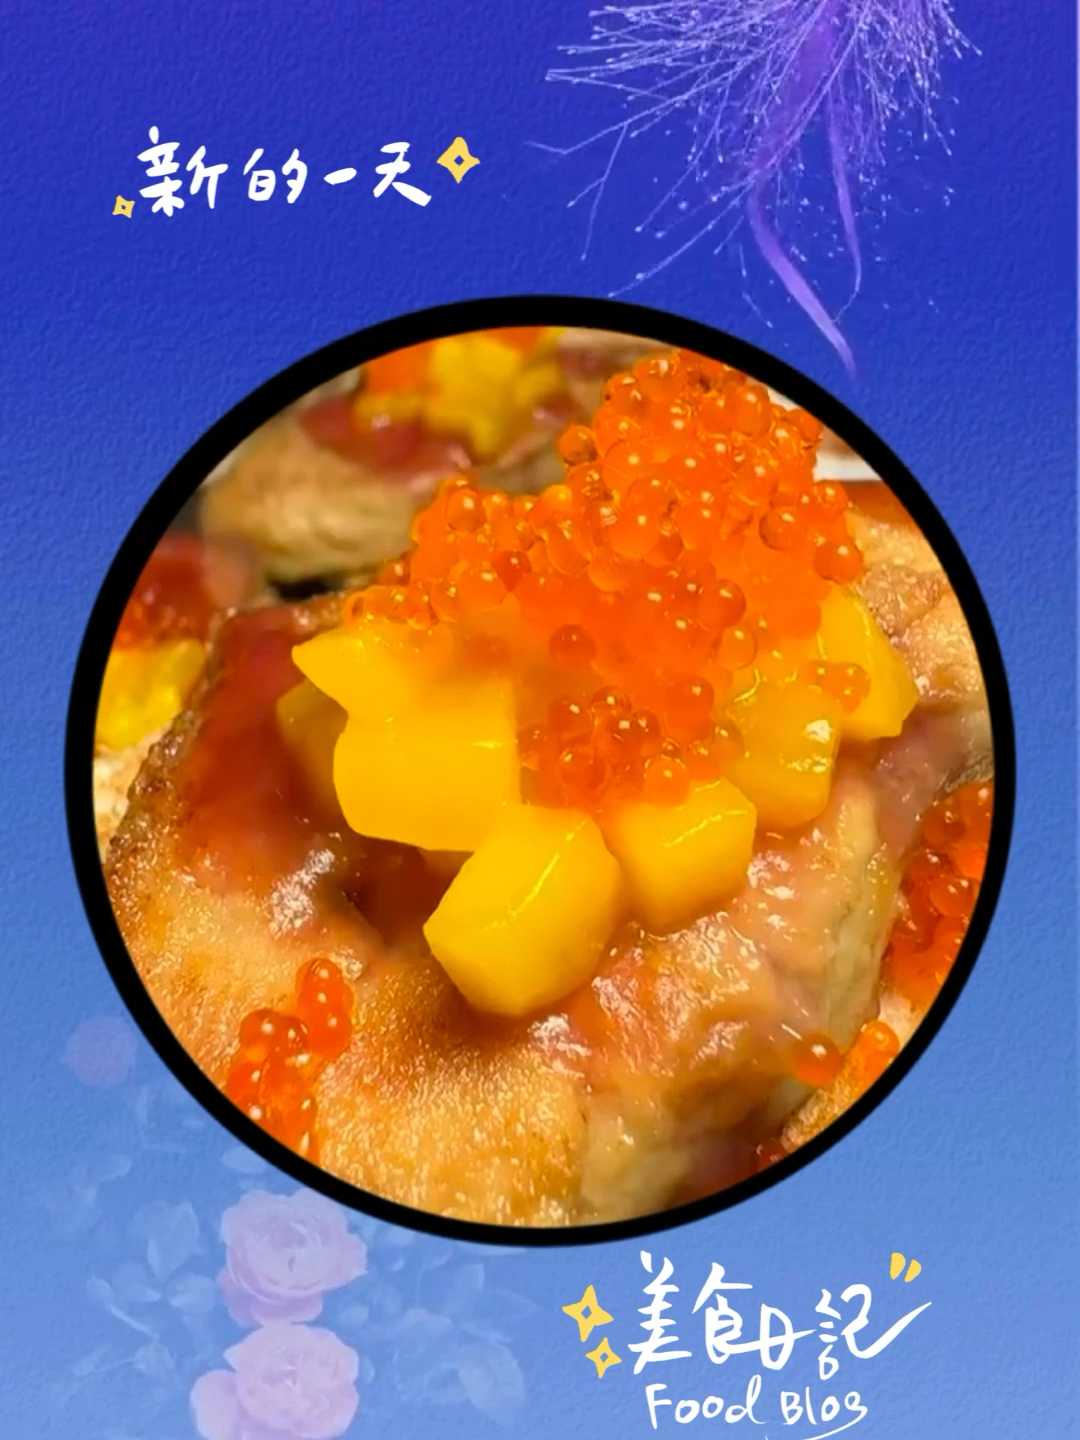 🌟亮点特色： 霸王蟹 ❤推荐理由： 超鮮 超好吃 👍最推荐： 又鮮又嫩